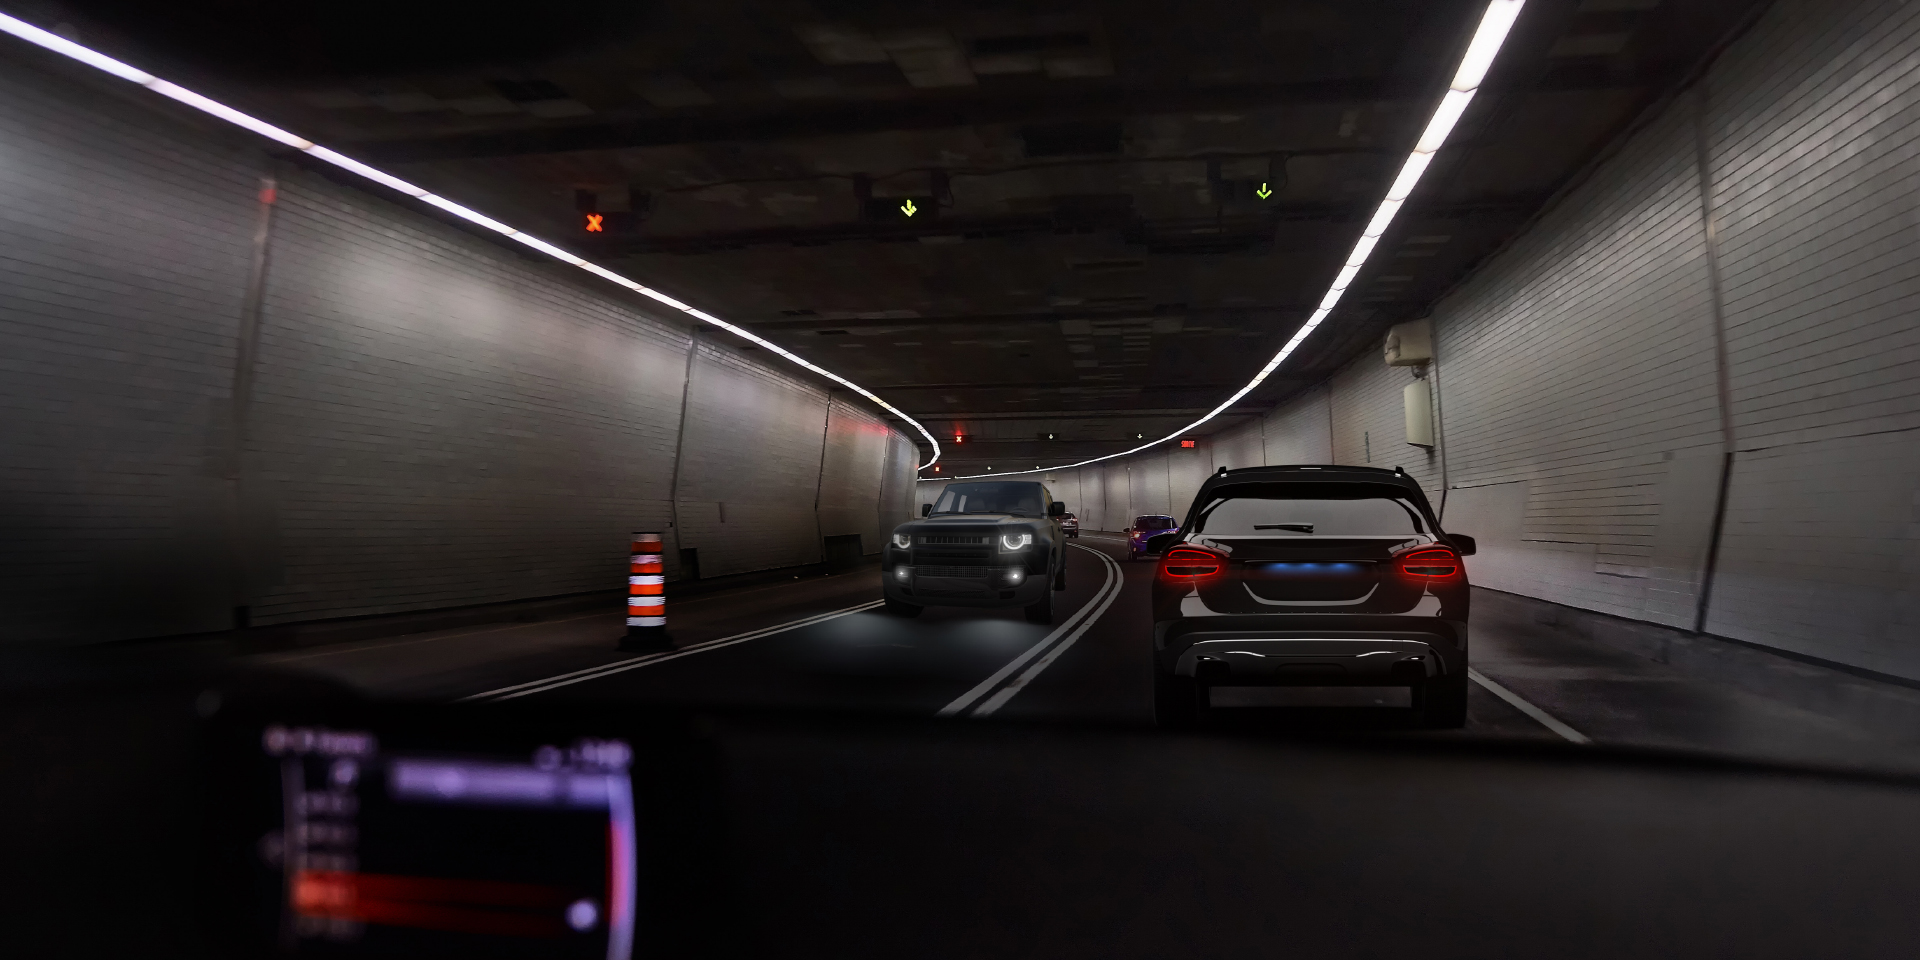 Dos imágenes de un conductor en un túnel con tráfico en sentido contrario, mostrando en una imagen el deslumbramiento del coche y las luces del túnel y en la otra imagen un deslumbramiento claramente reducido.